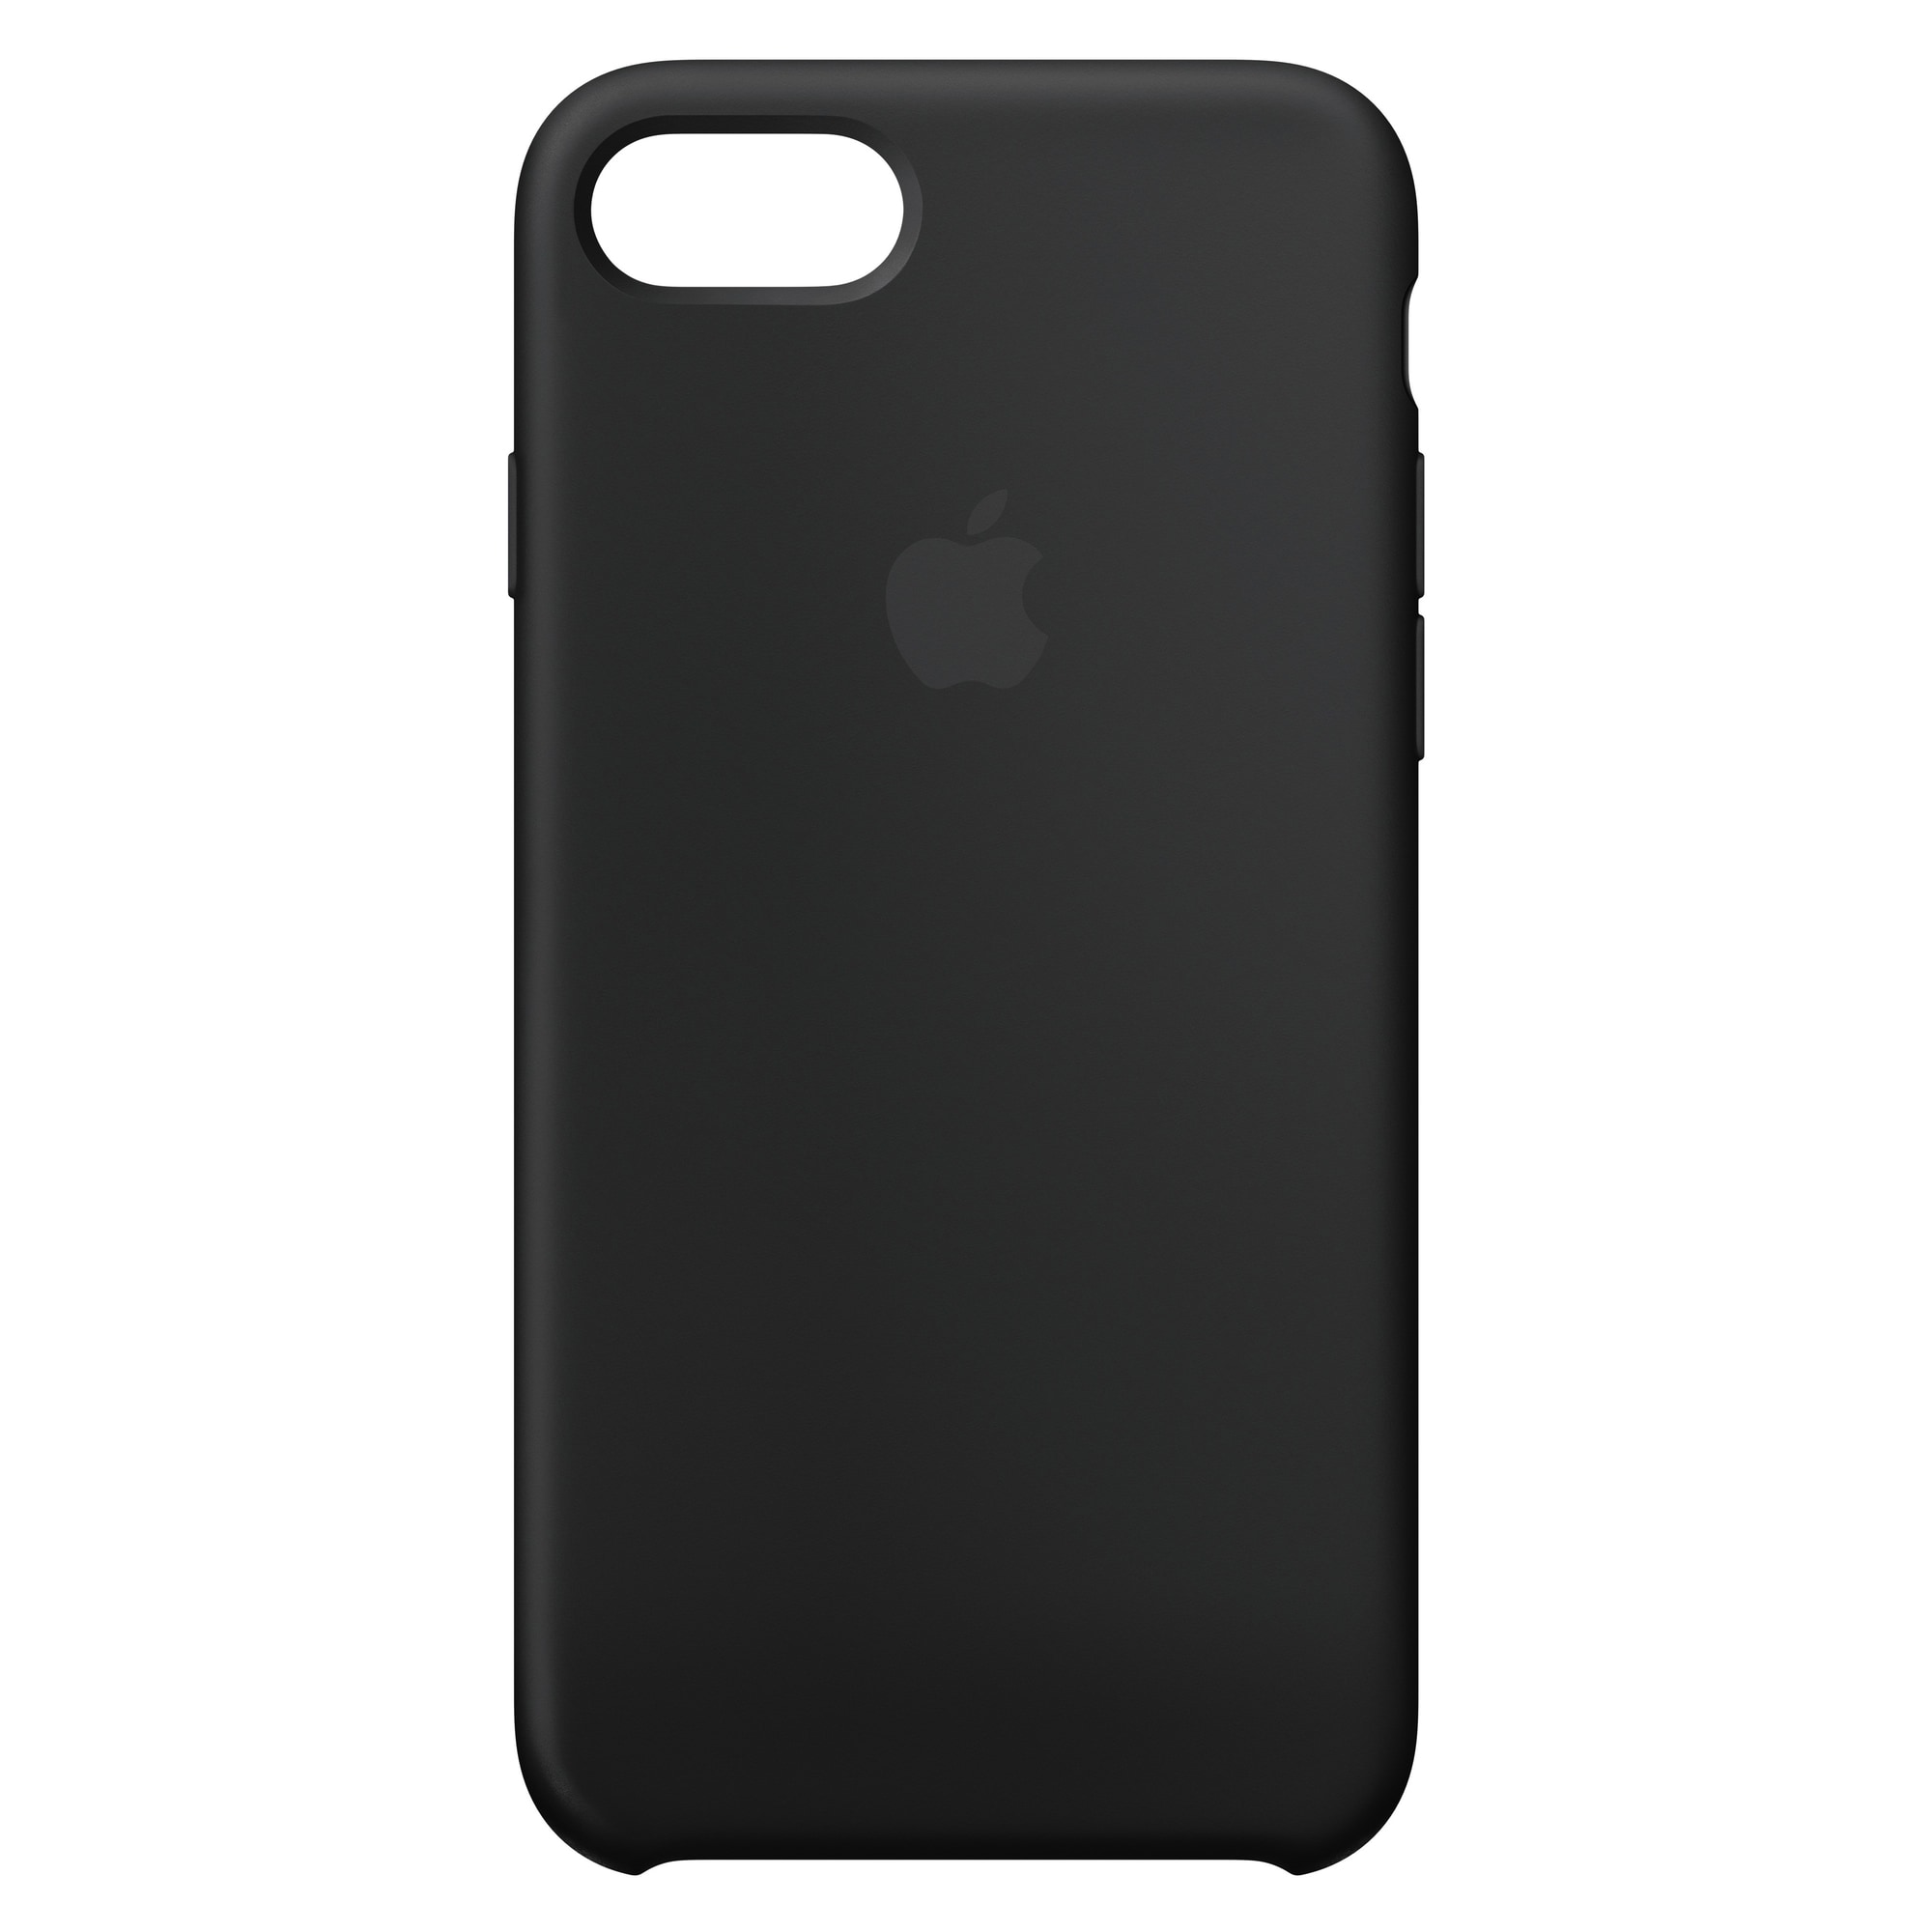 Iphone 8/SE silikonfodral (svart) - Elgiganten